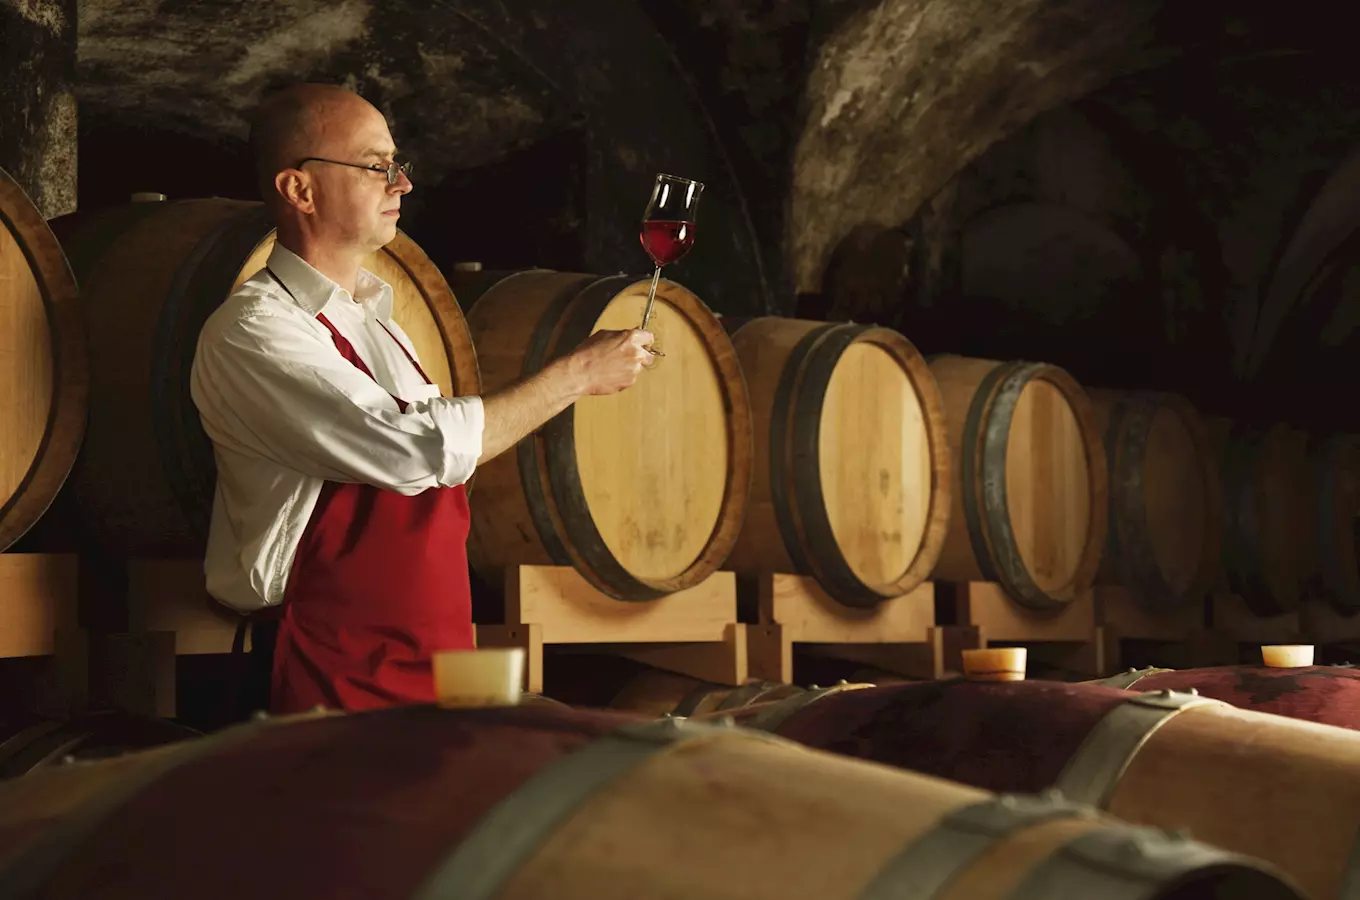 Ochutnávky vína: Na toulky se skleničkou zvou vinaři na Podluží, Velké Němčice i Mělník